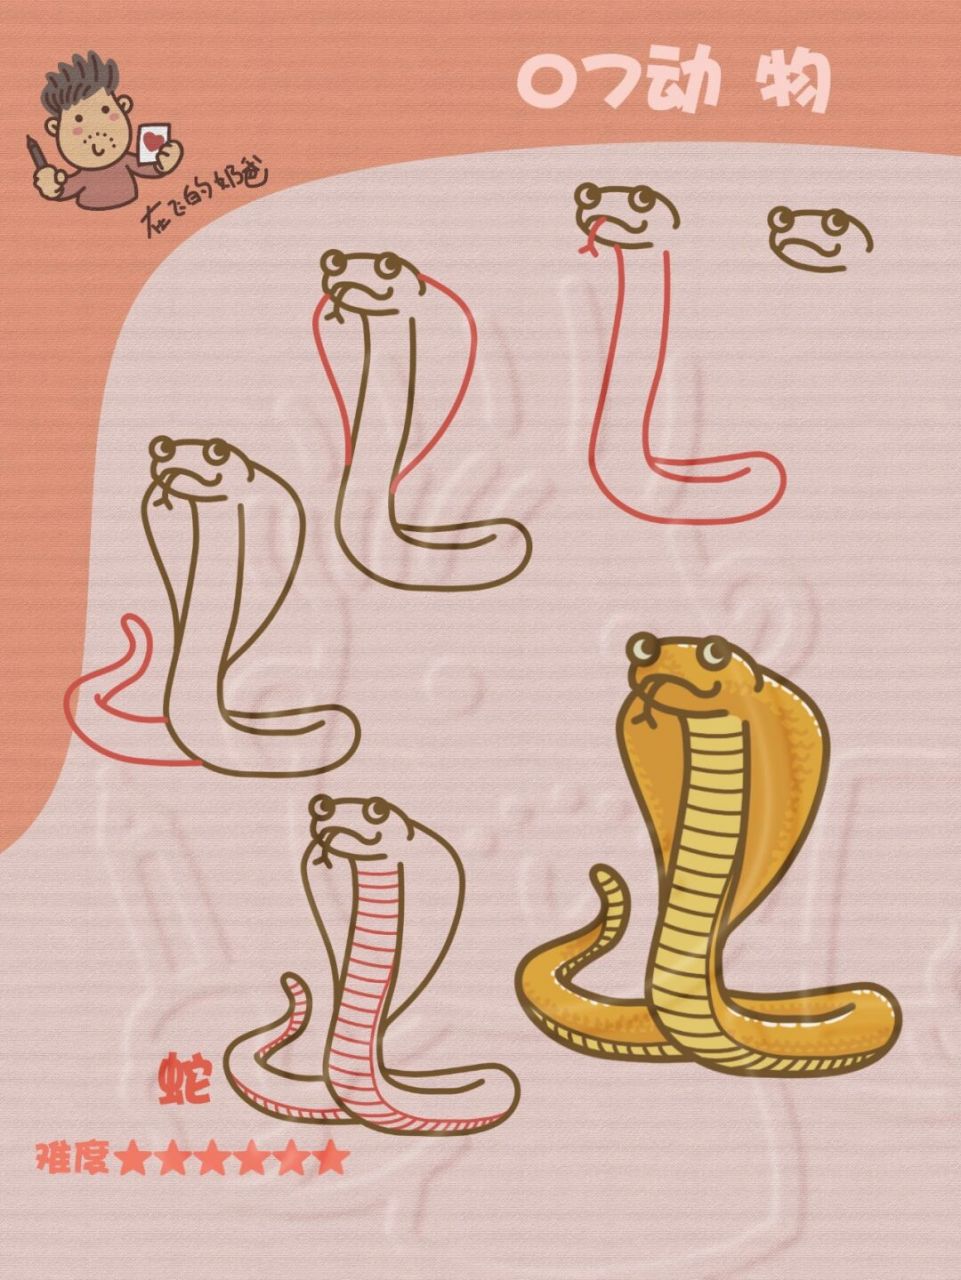 蛇的简笔画 霸气图片